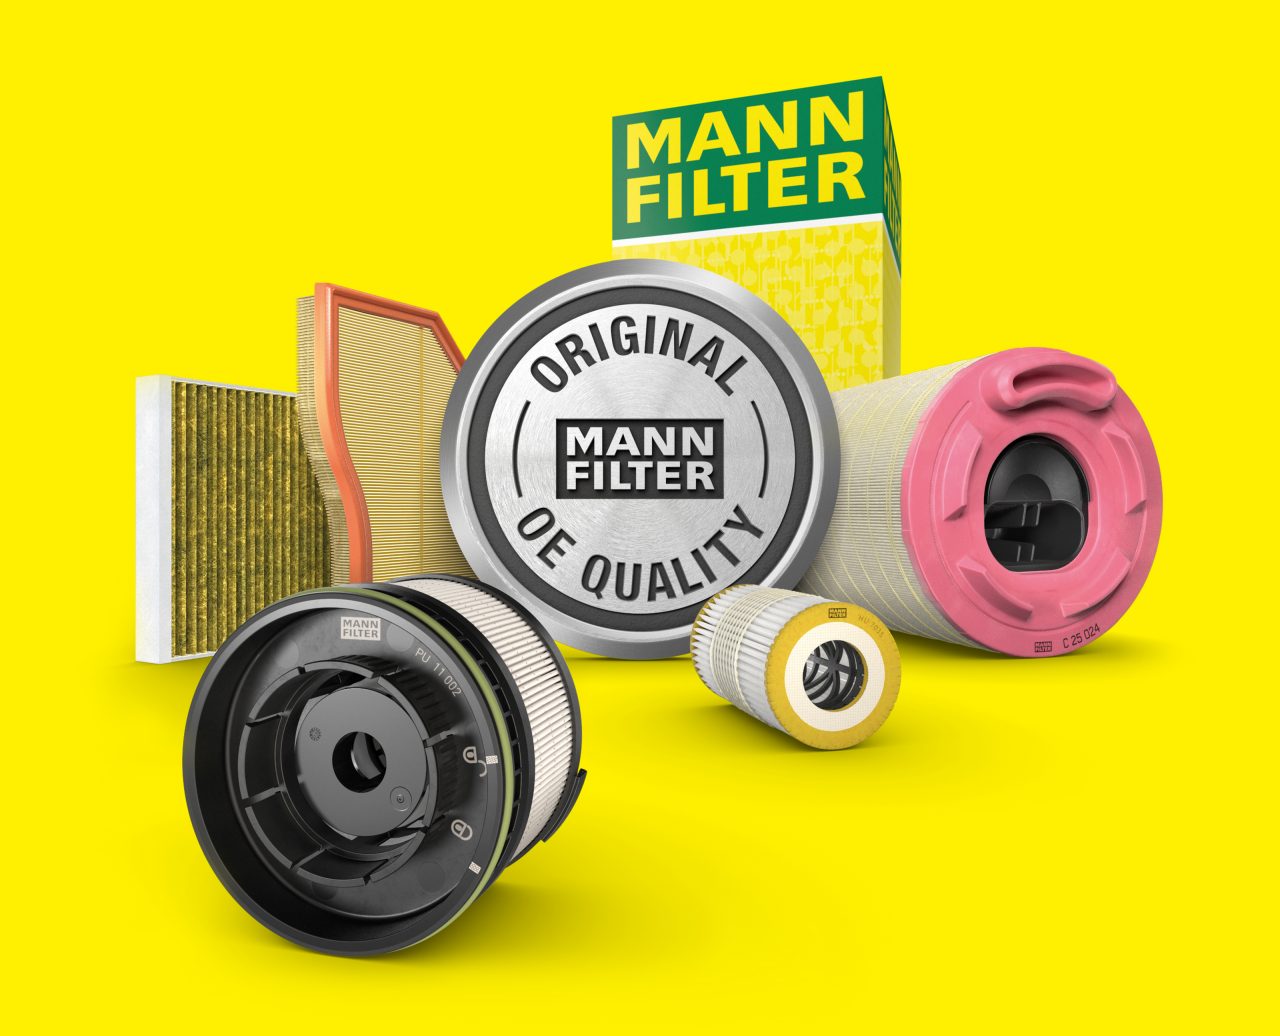 Qualitätsfilter von MANN-FILTER für jedes Auto